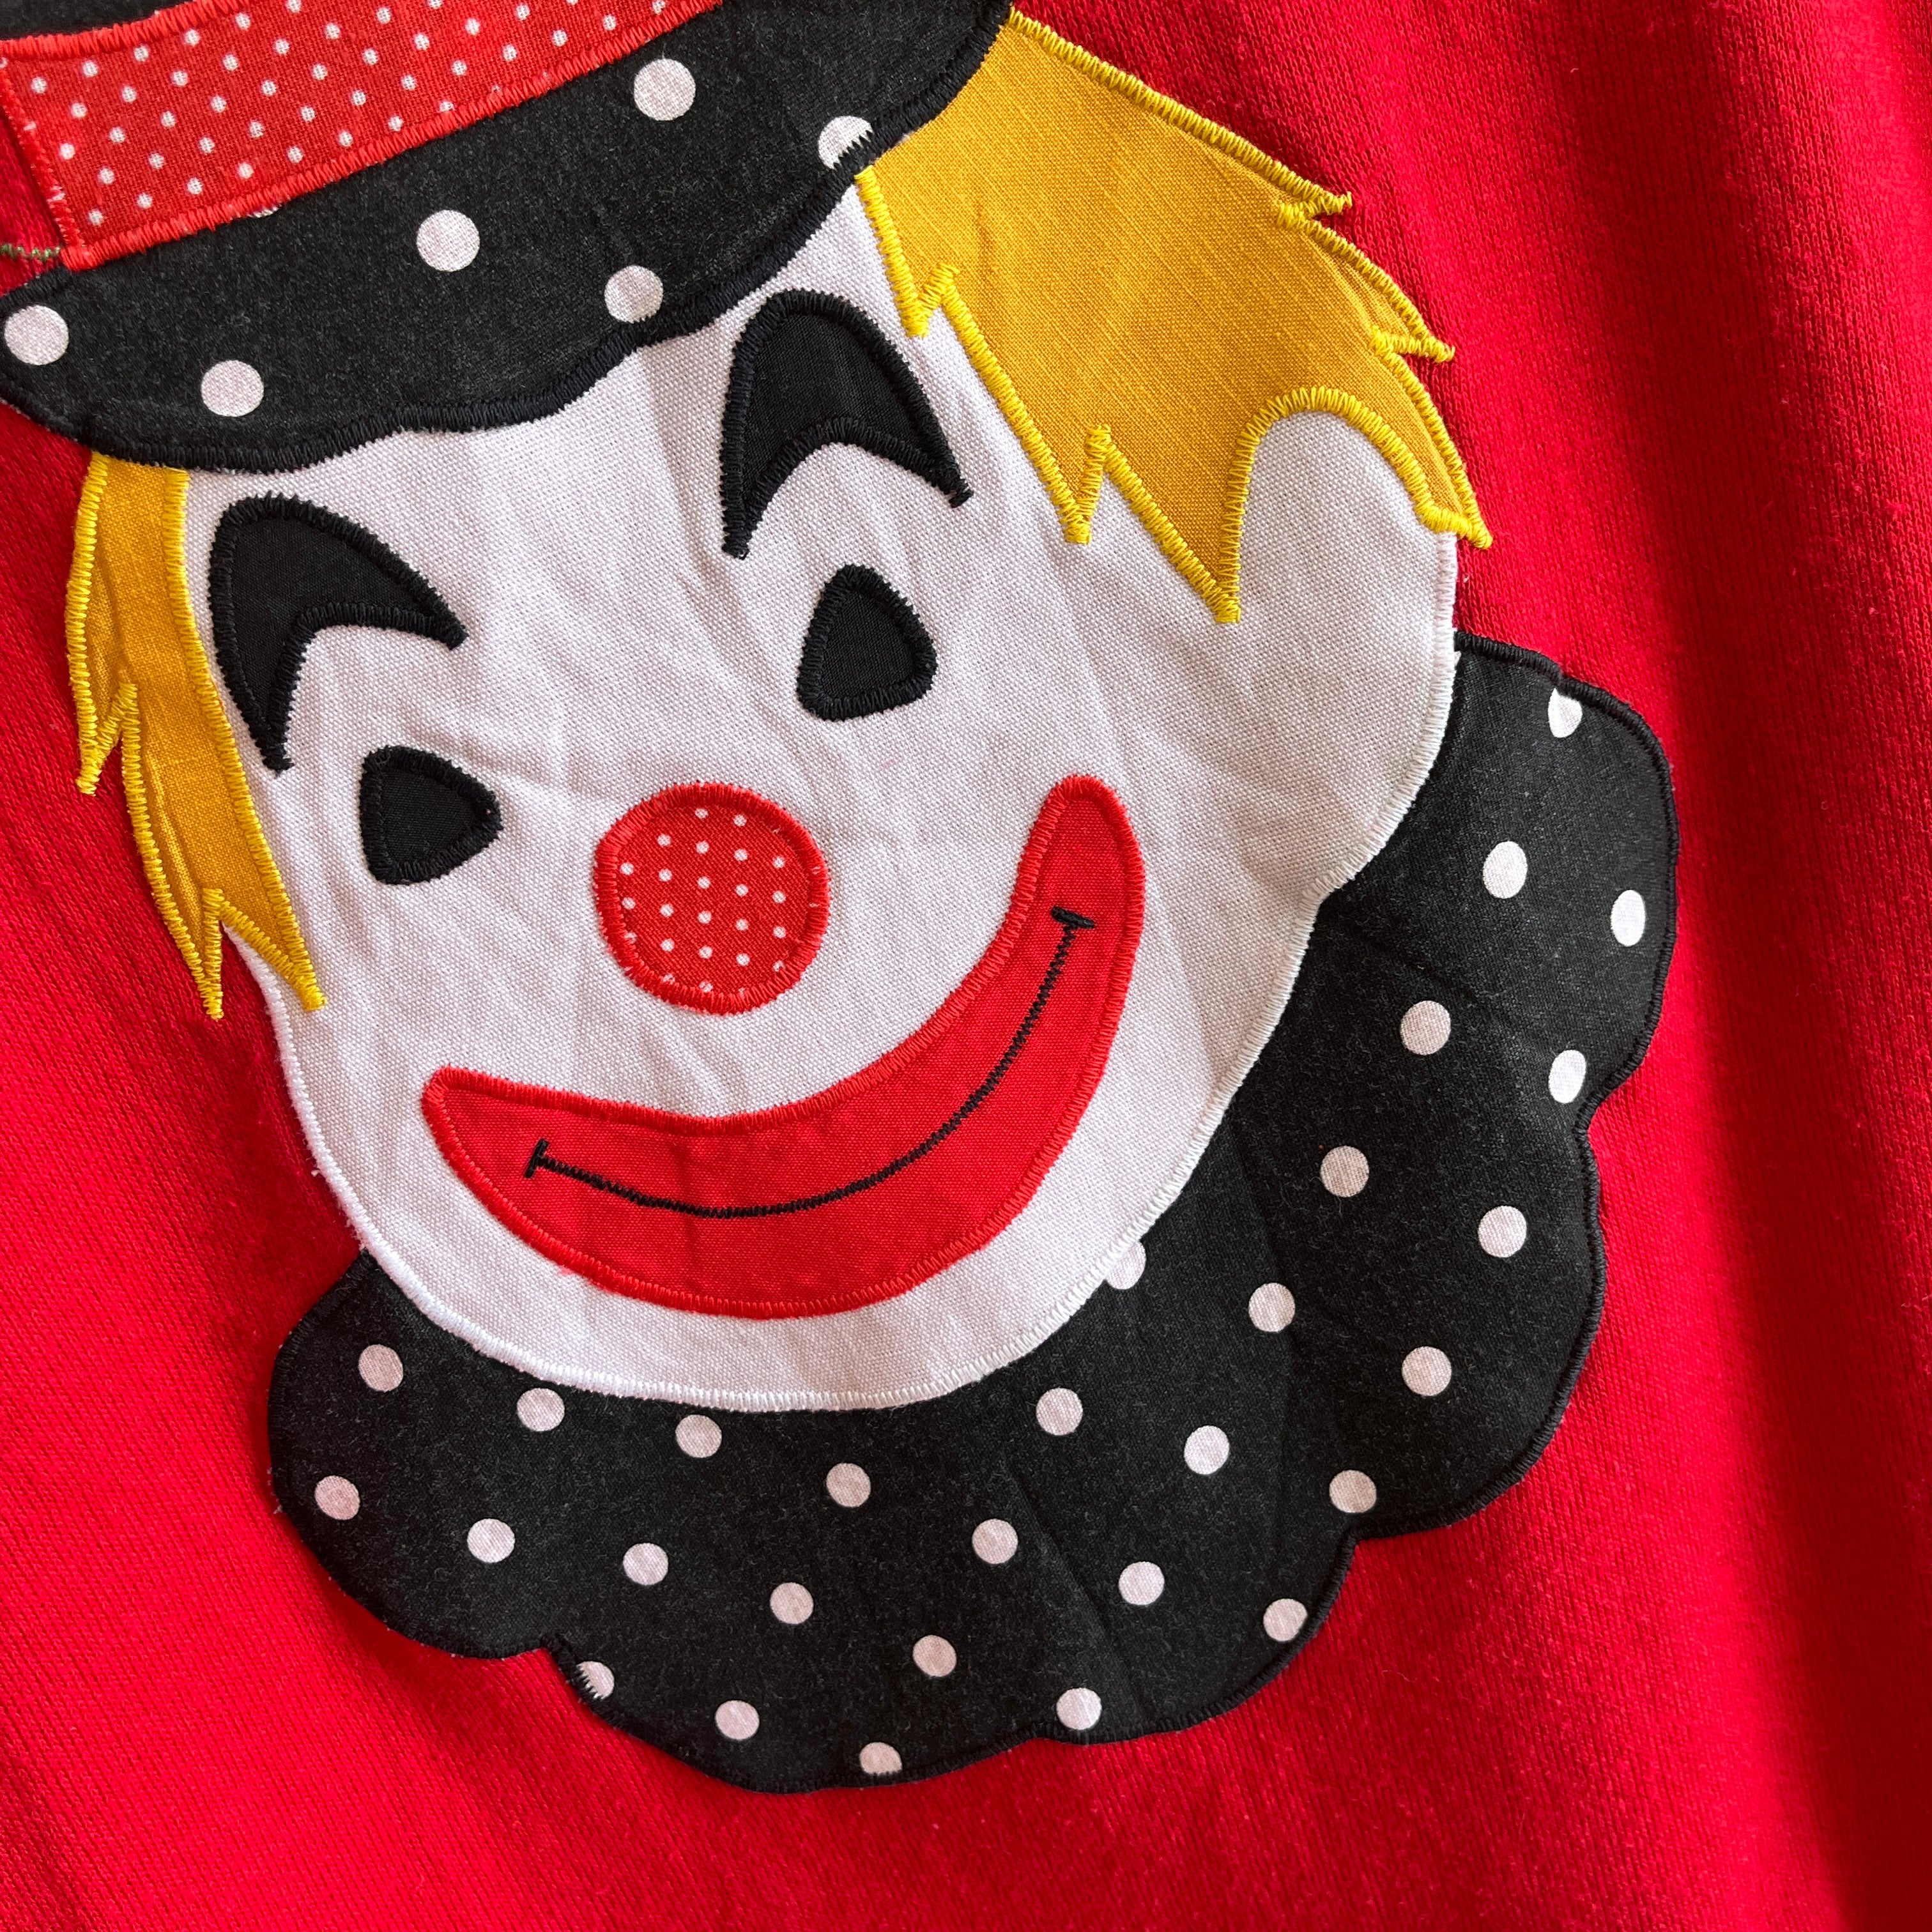 1980s Creepy Clown Applique Sweatshirt